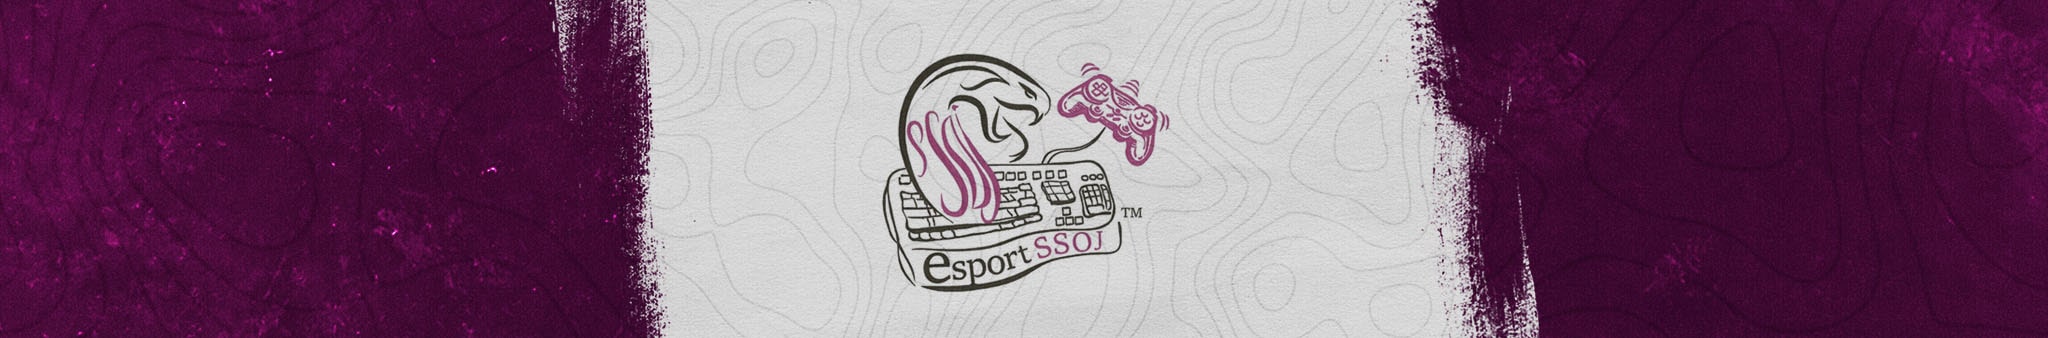 SSOJ E-sport